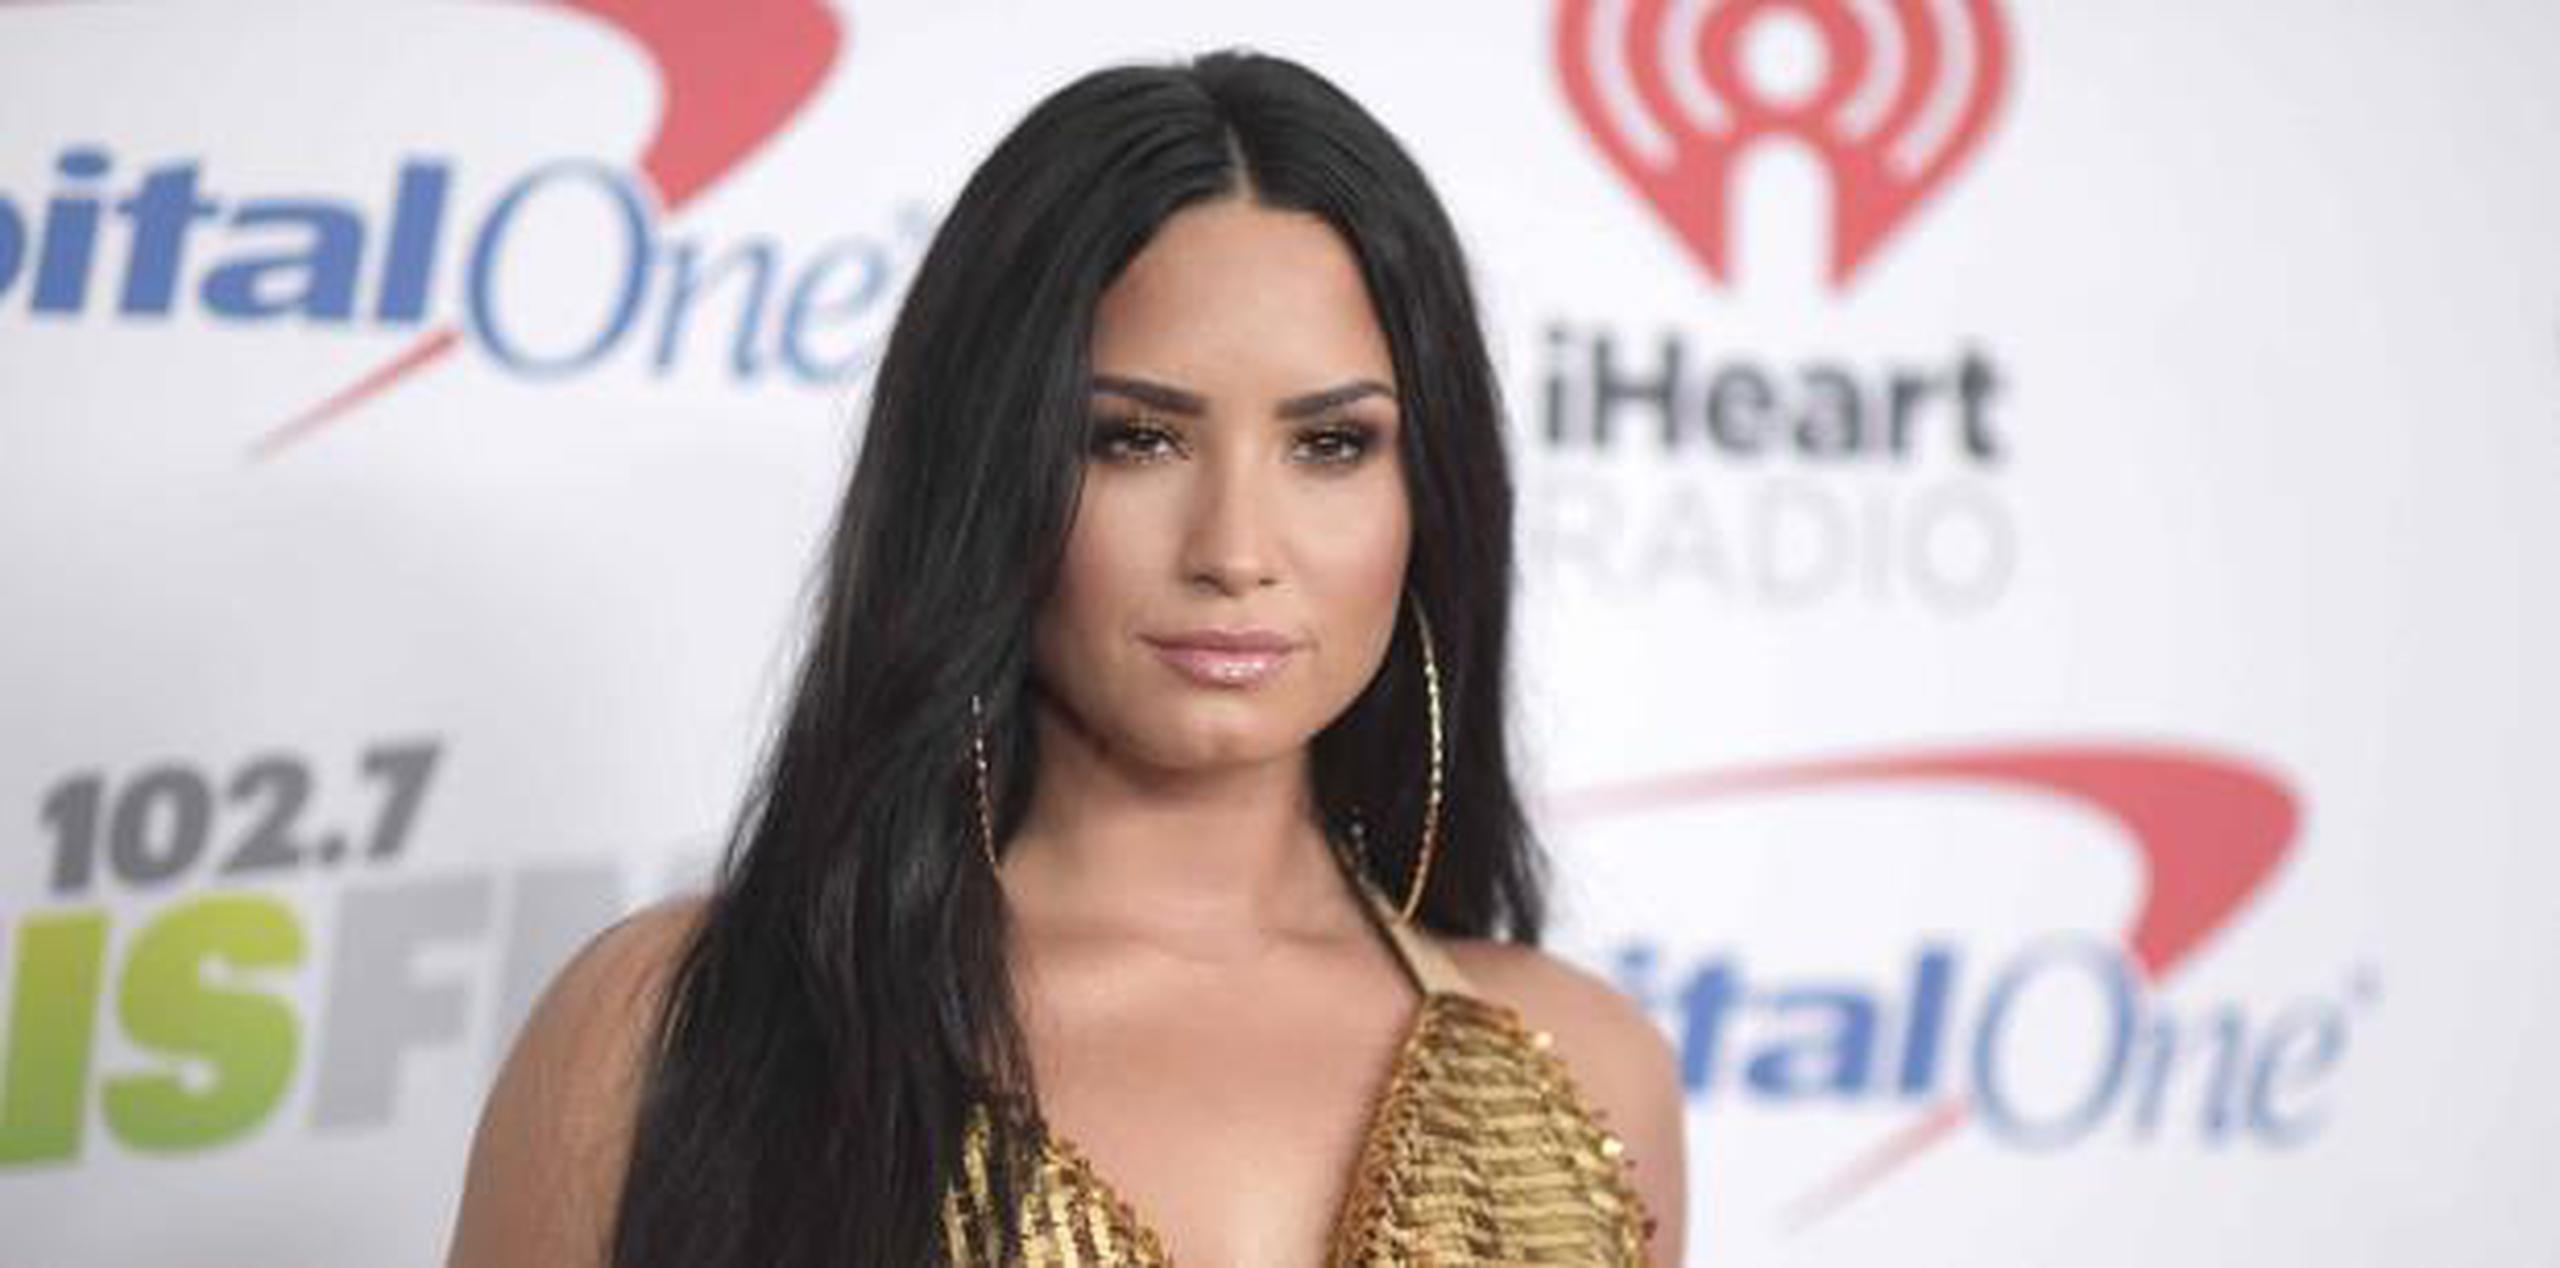 Demi Lovato, de 25 años, ha padecido desórdenes alimenticios y también llegó a mutilarse, entre otros problemas. (AP)